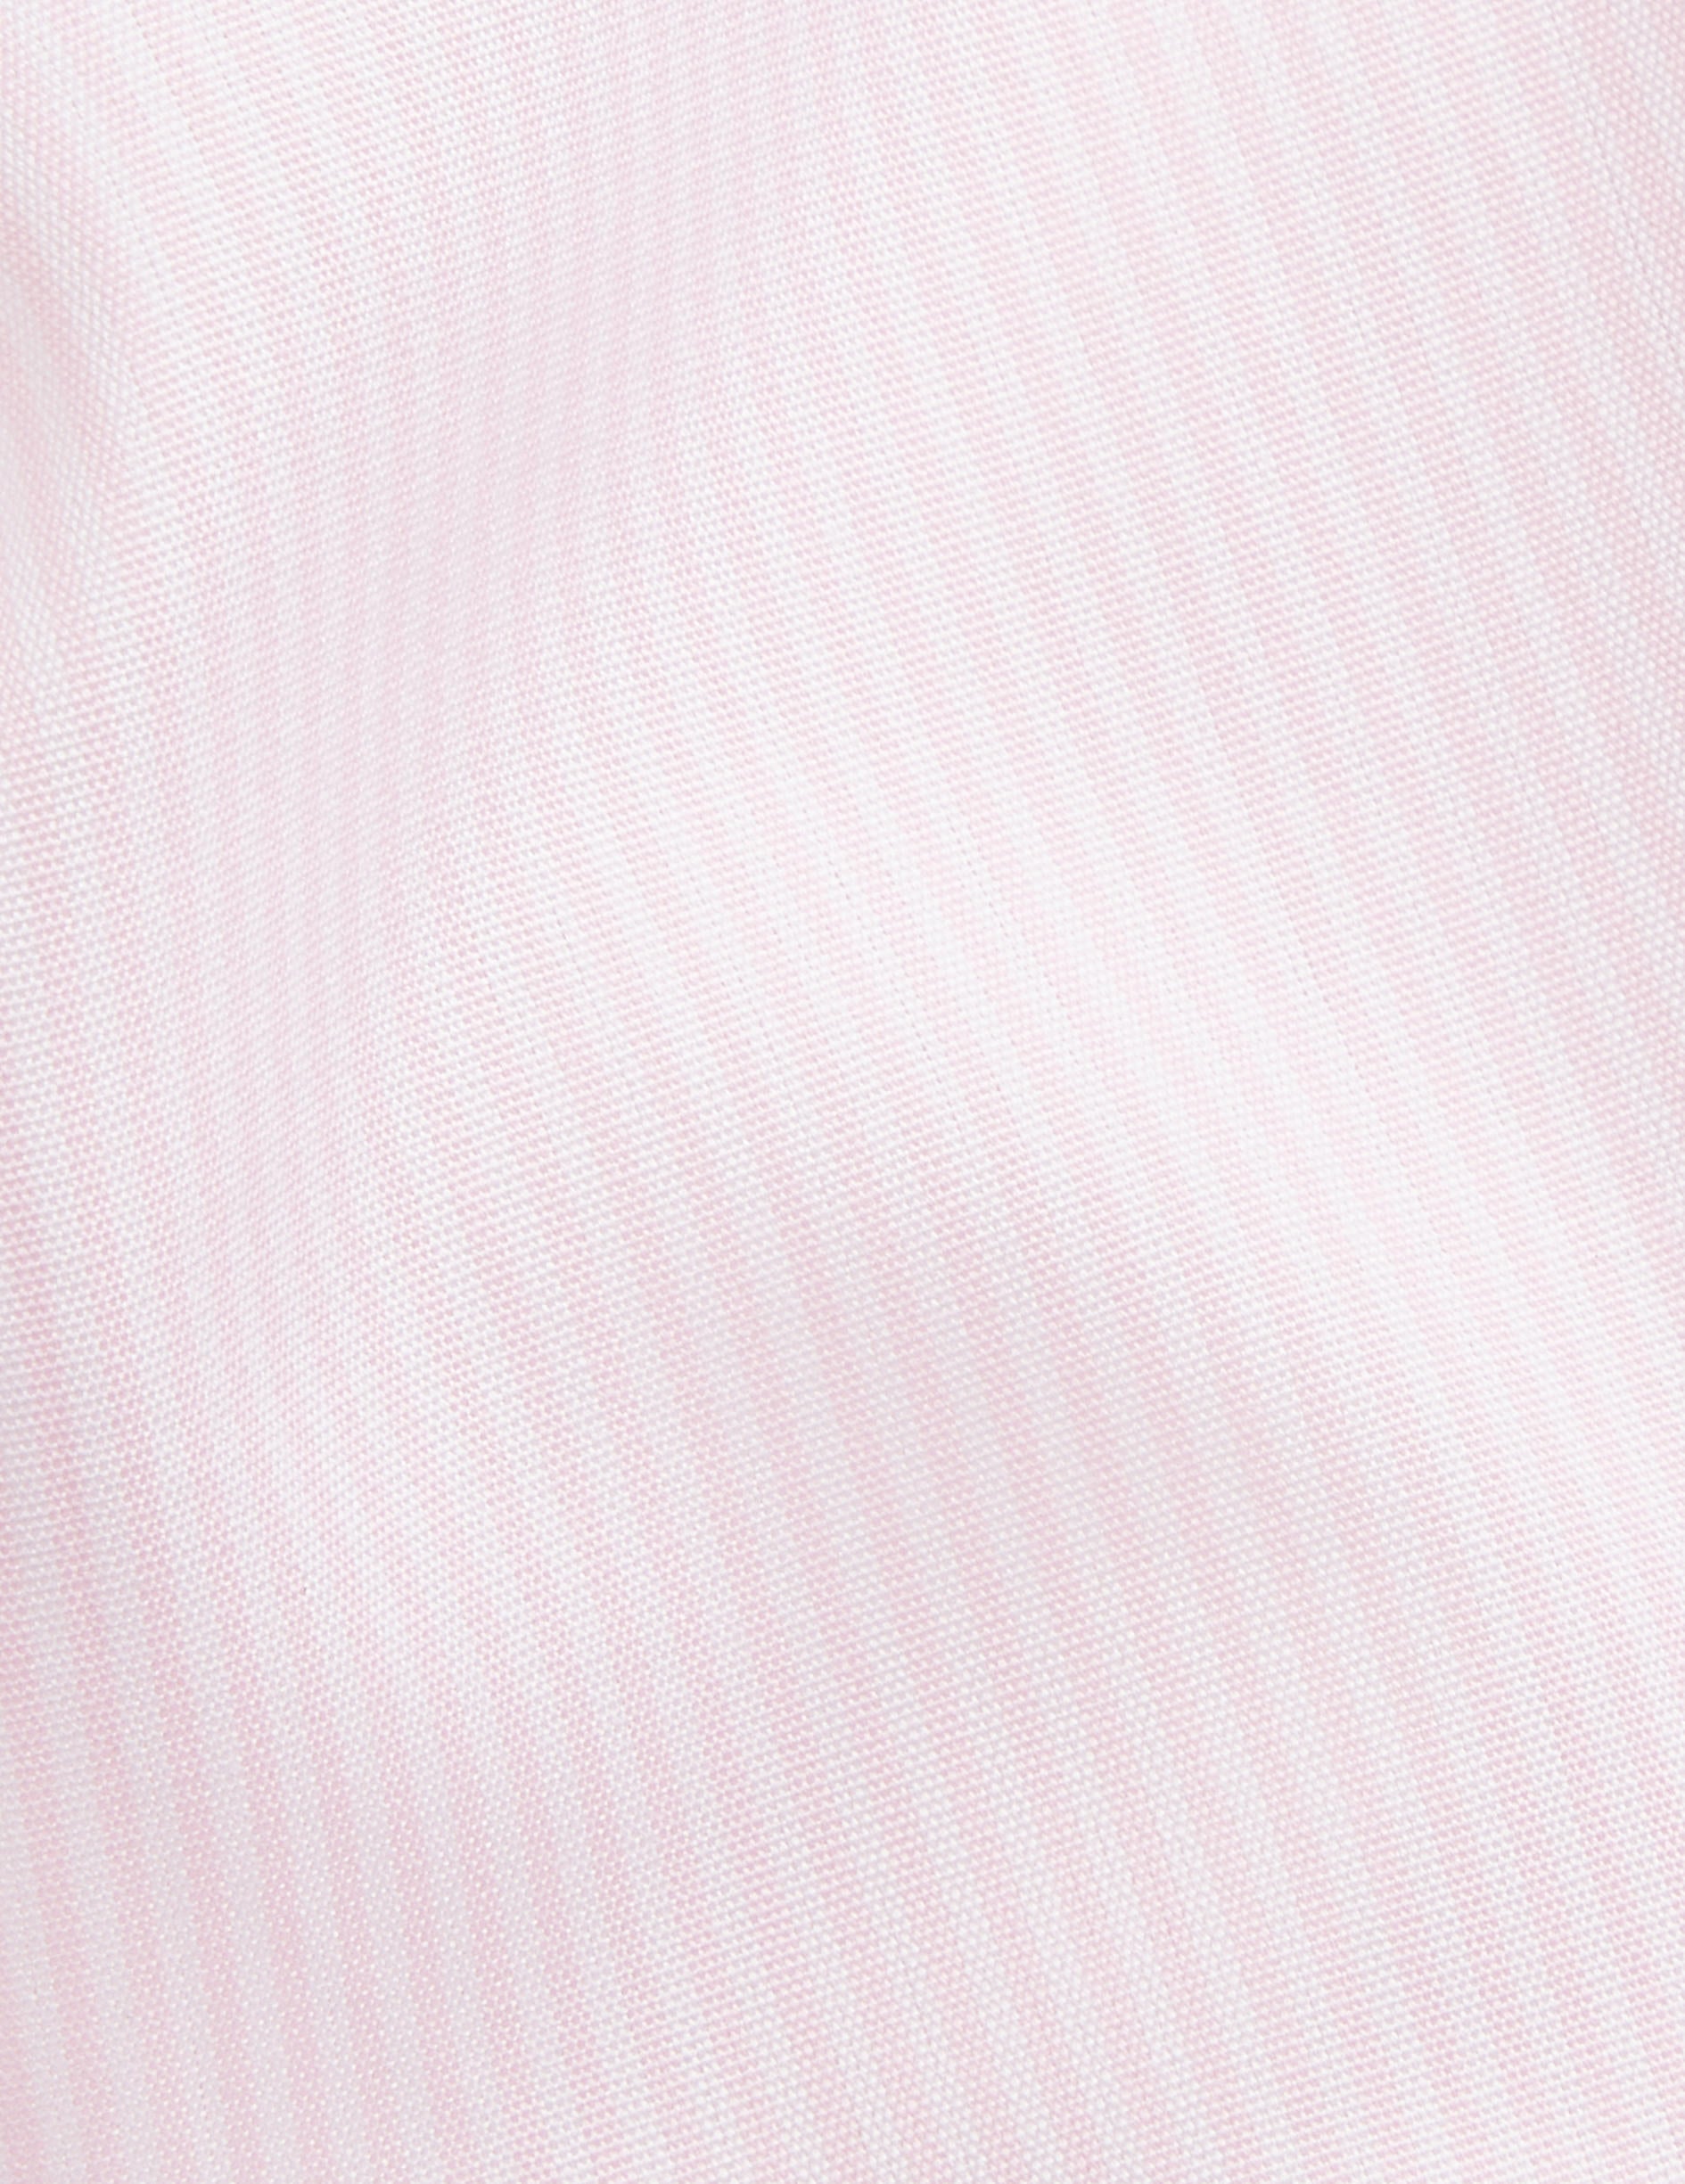 Chemise Semi-ajustée rayée rose - Popeline - Col Italien